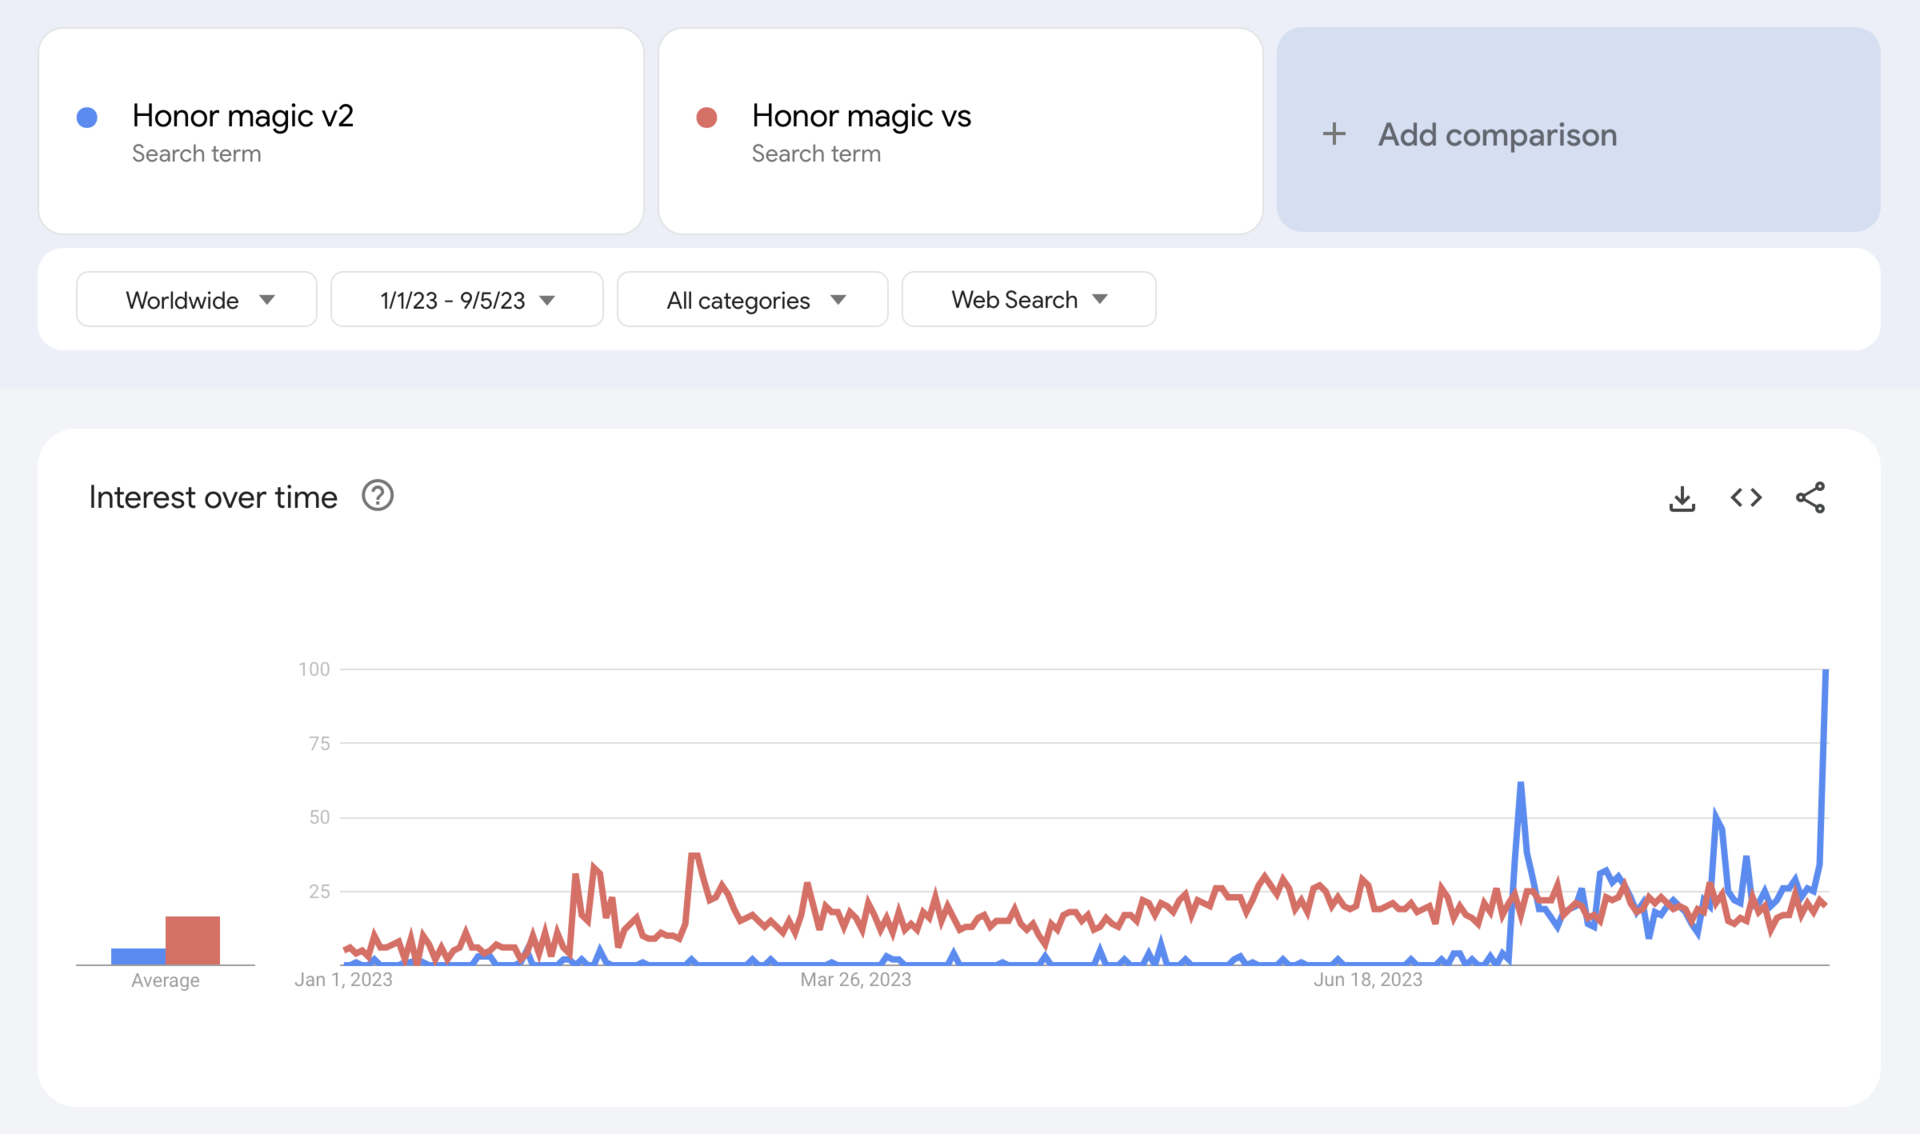 google trends honor magic vs v2 worldwide